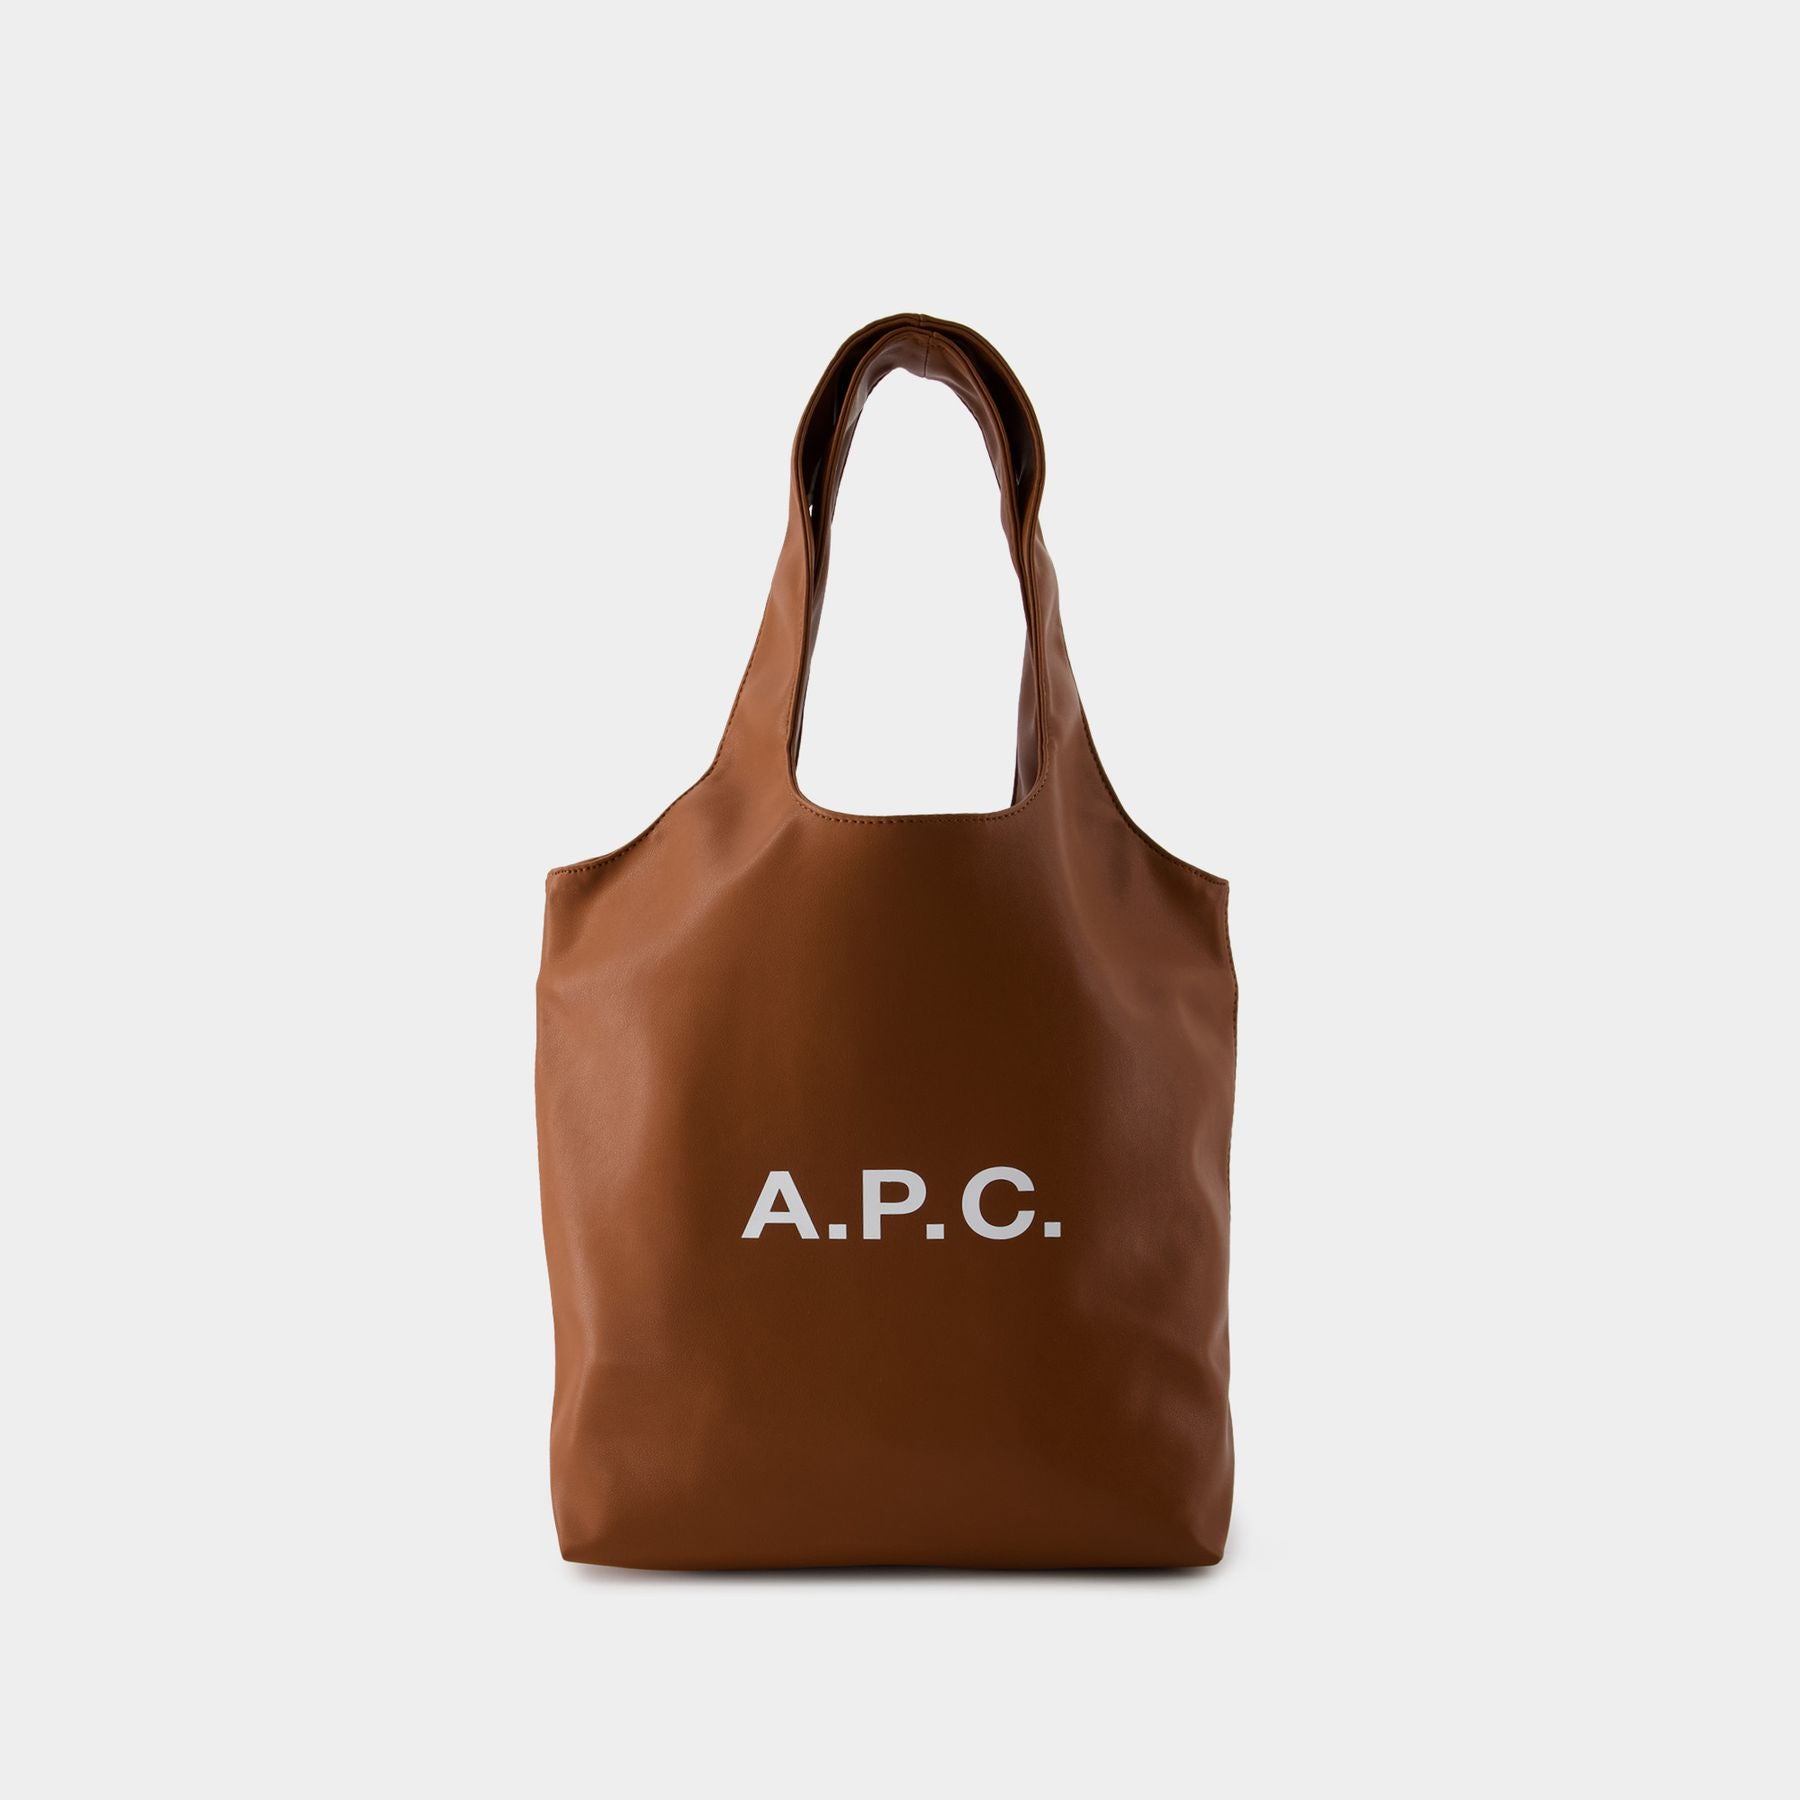 Ninon Small Tote Bag - A.P.C. - Synthetic - Hazelnut